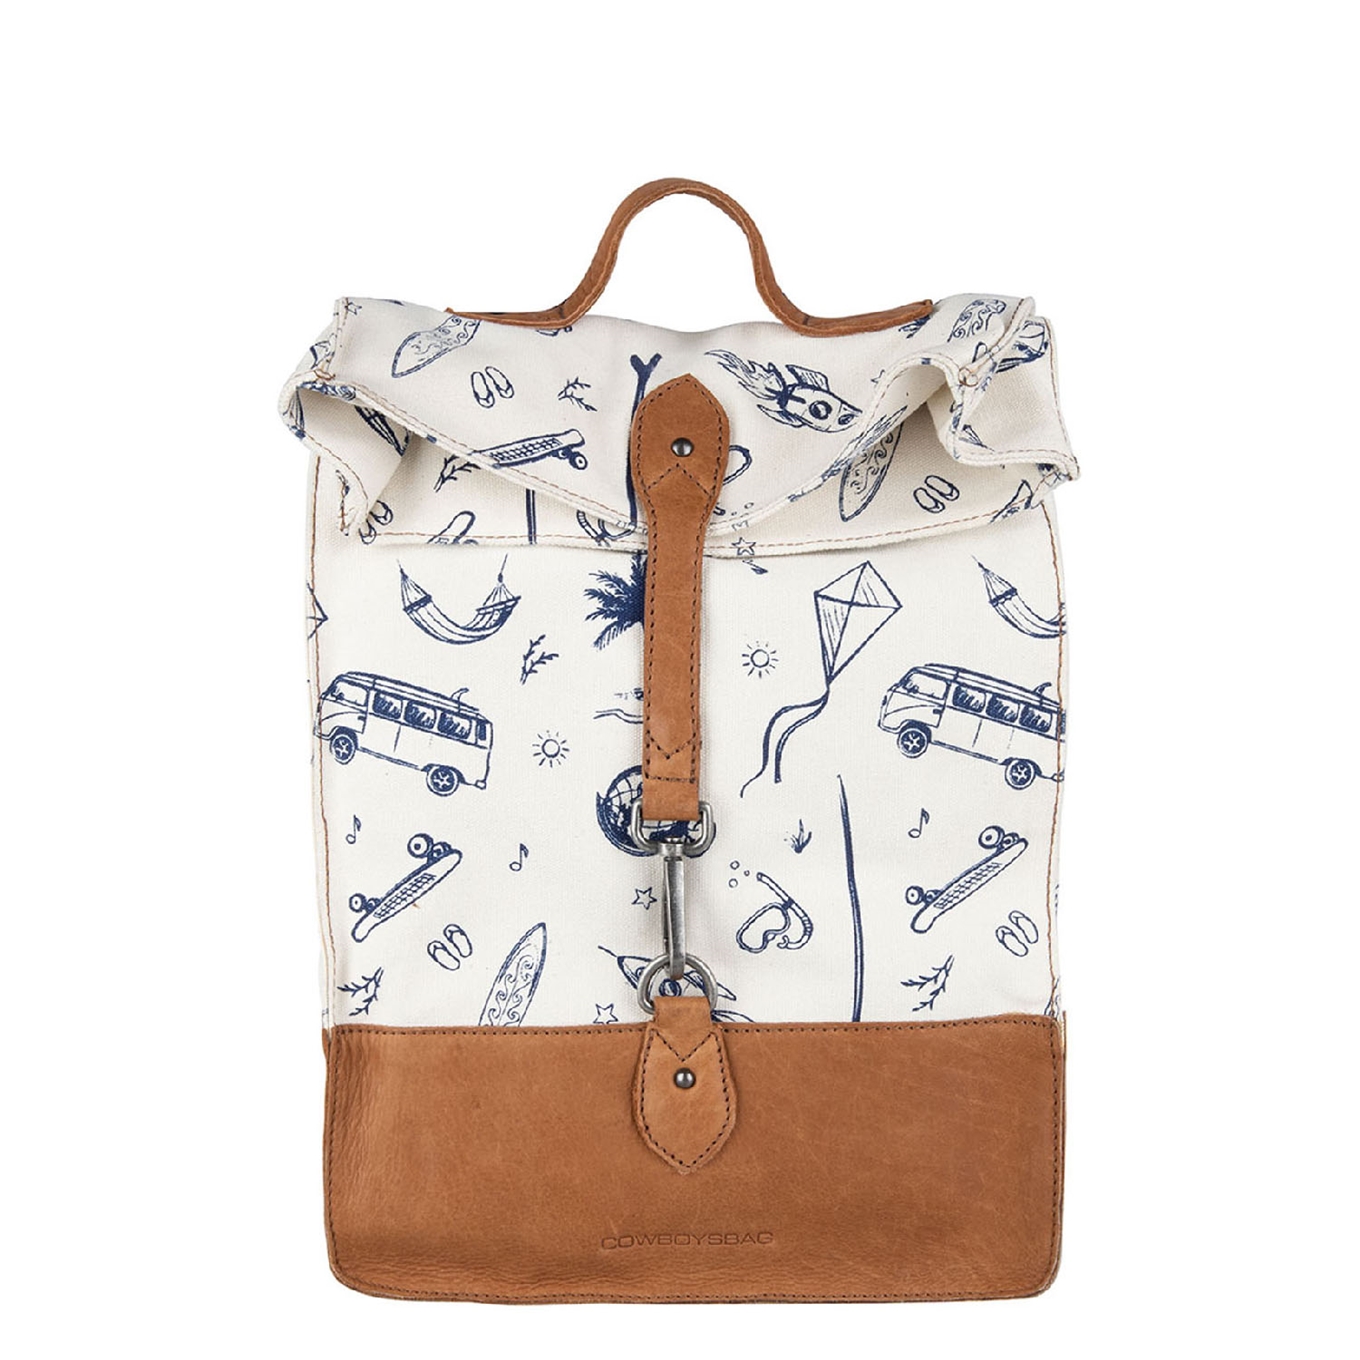 Investeren ik lees een boek kiem Cowboysbag rugzak kopen? De nieuwste Cowboysbag collectie staat nu online!  | Travelbags.nl